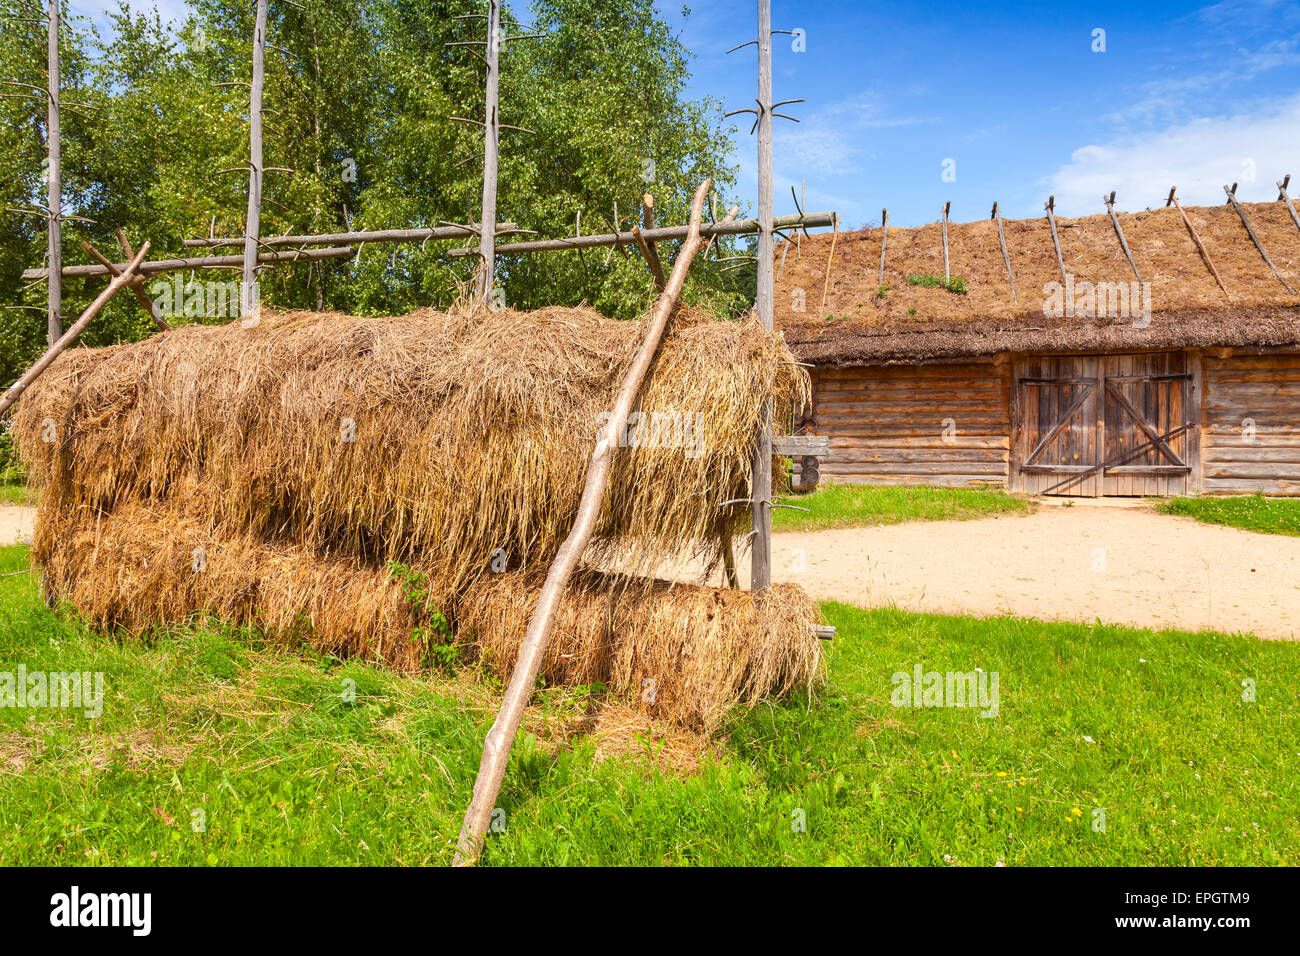 Russische ländliche Holzbaukunst beispielsweise im freien Heu trocknen Bau in der Nähe von alte Scheune mit verschlossenen Tor Stockfoto